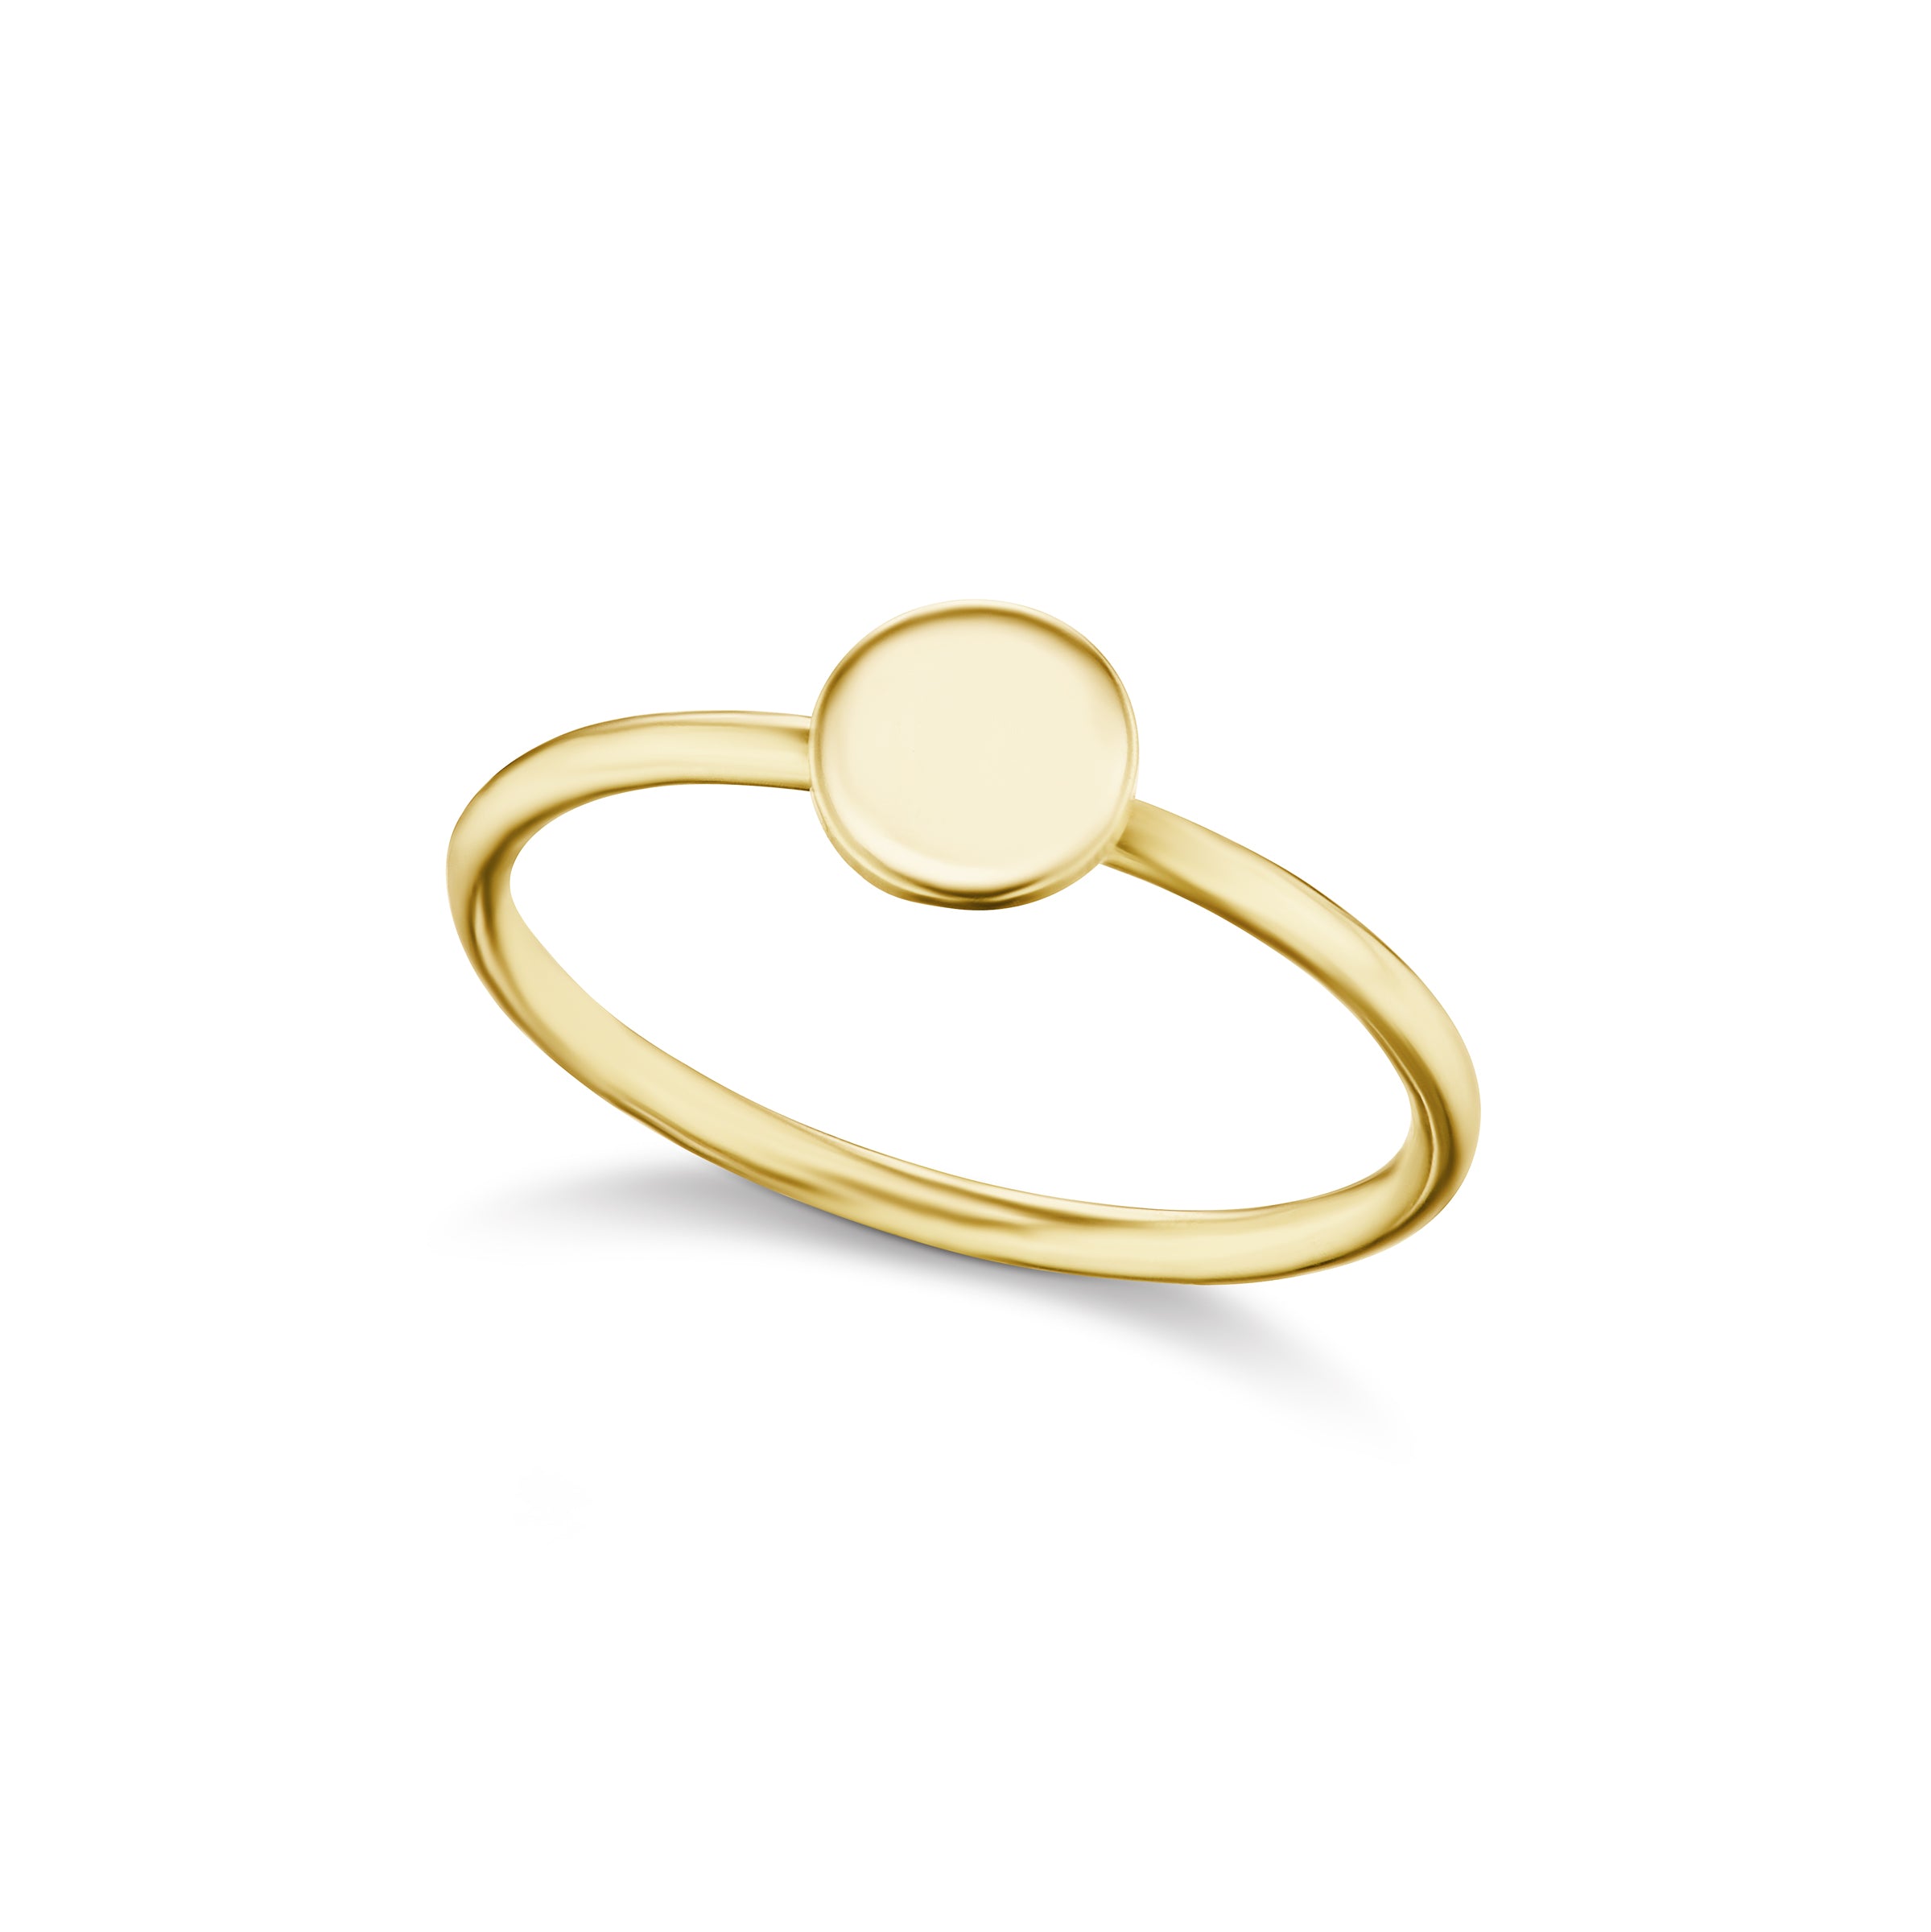 The Gold Petite Signature Ring